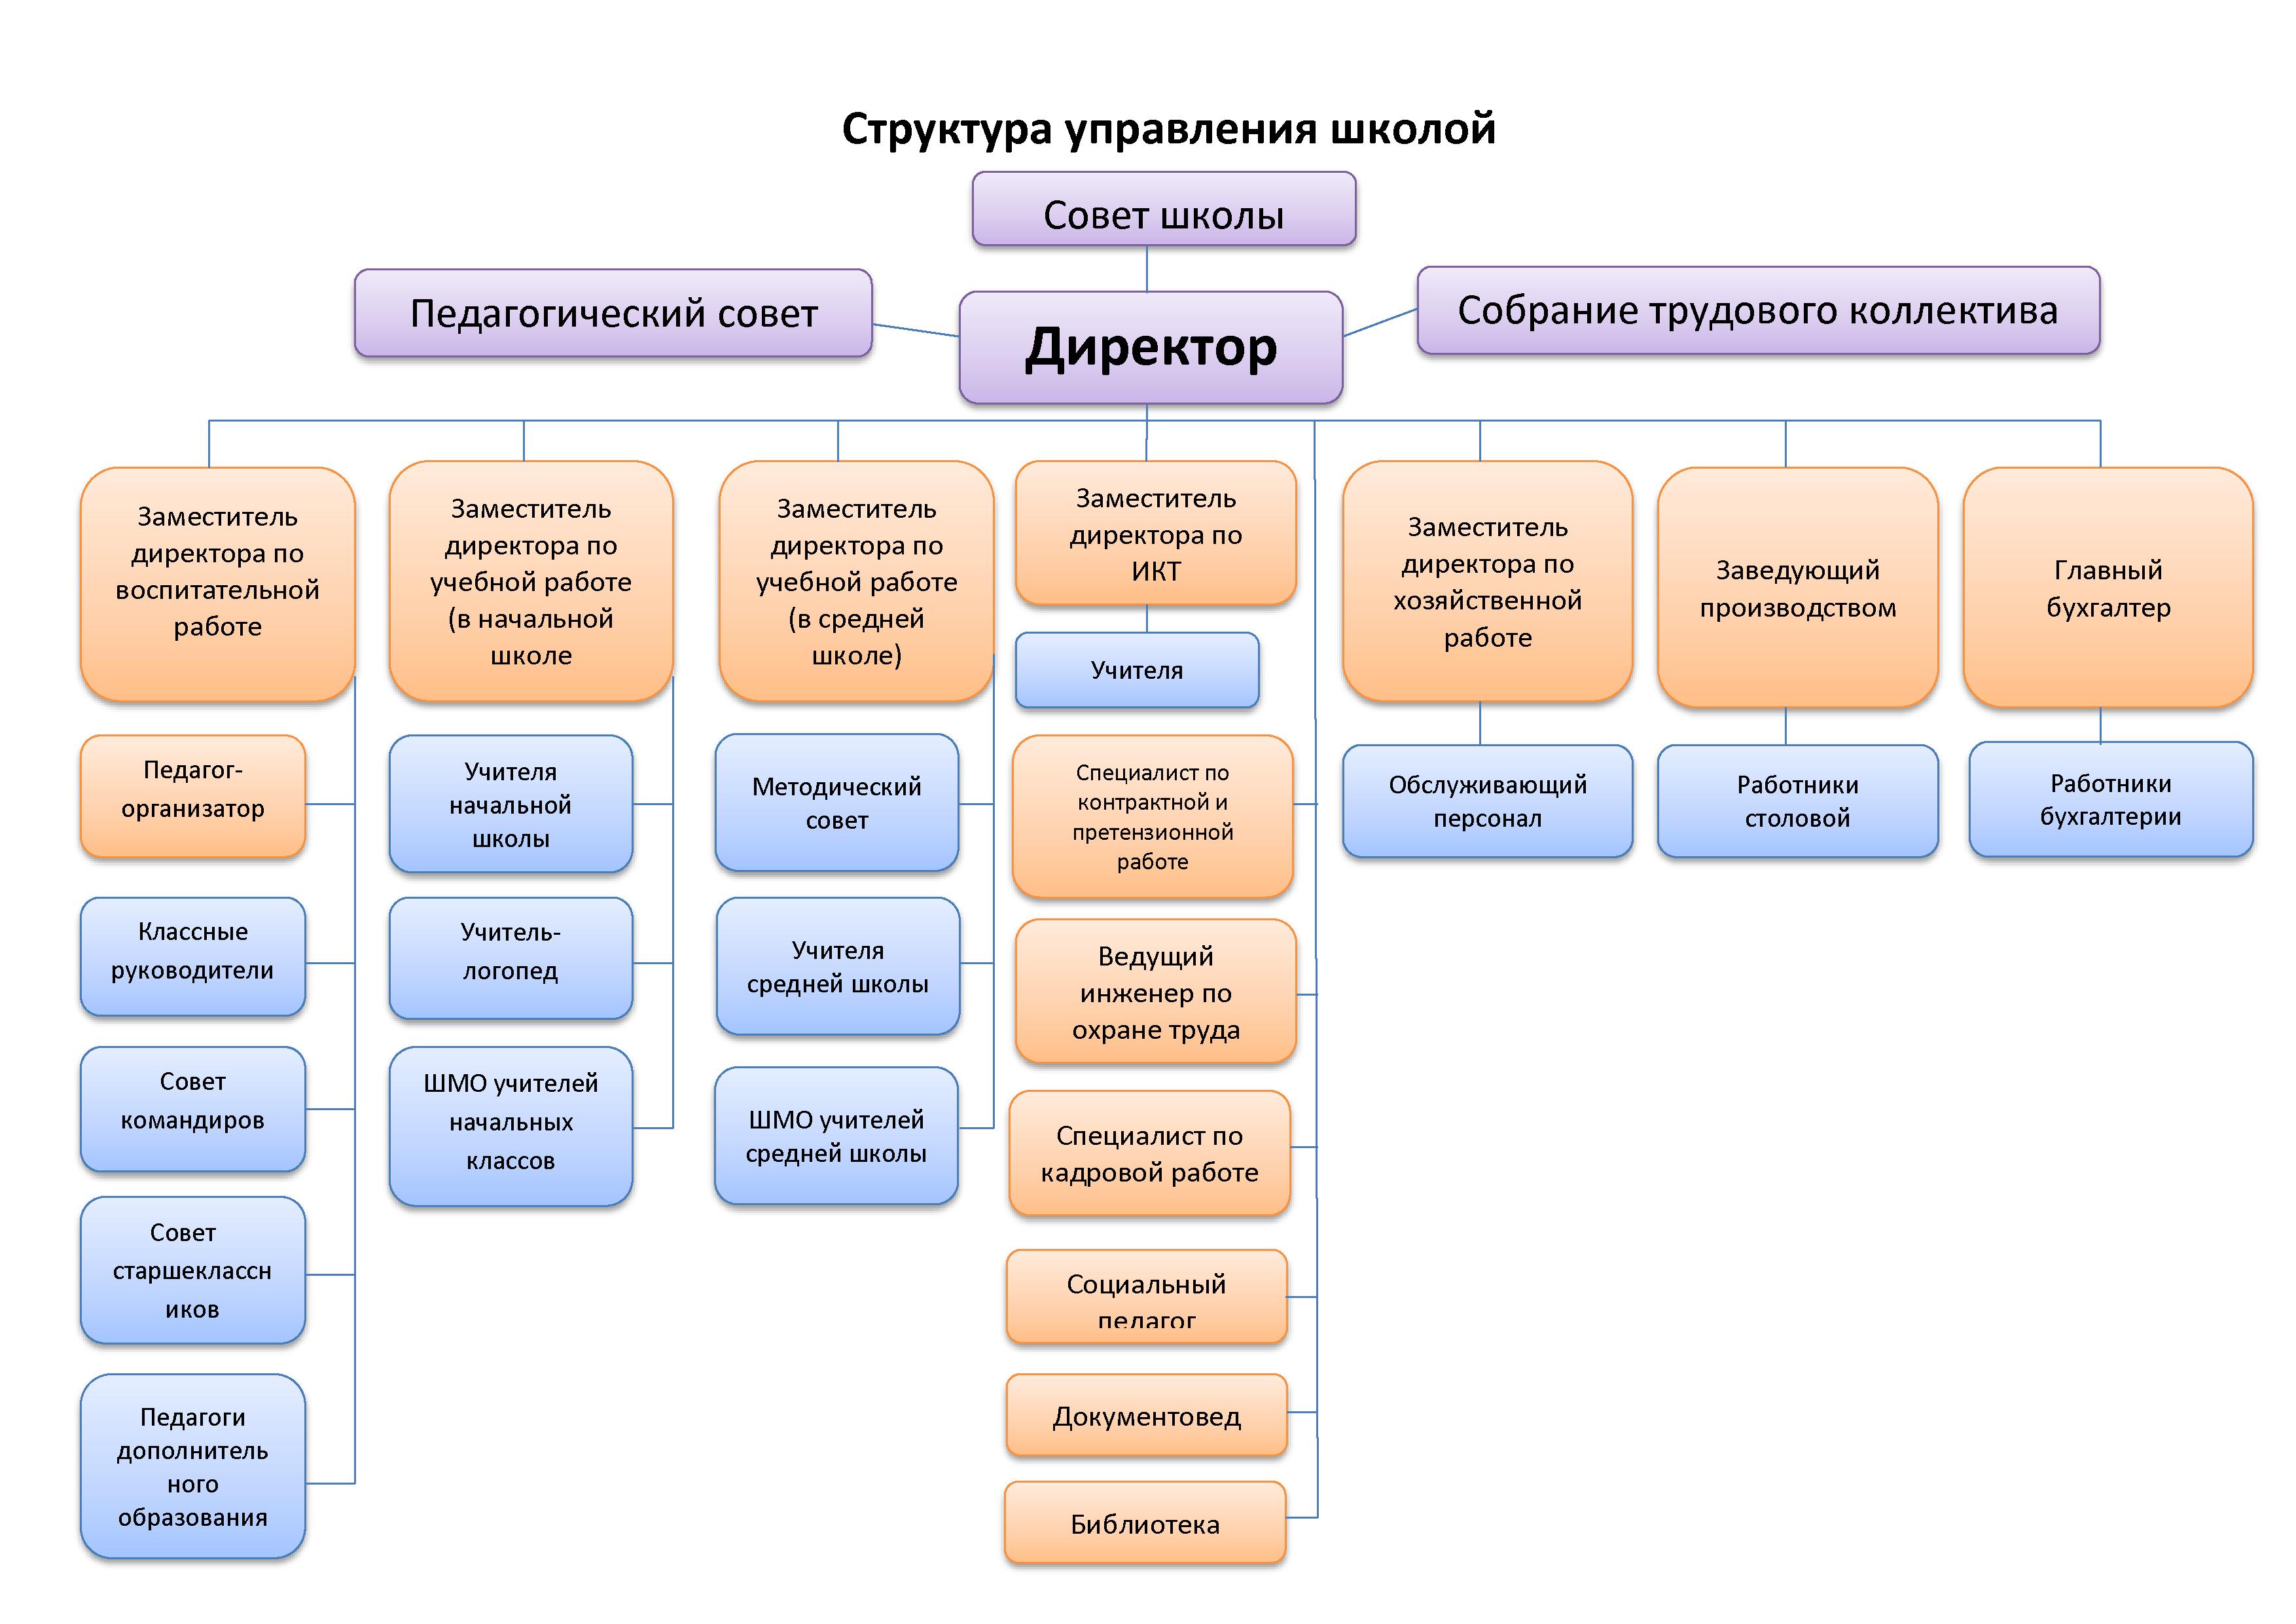 Структура и органы управления